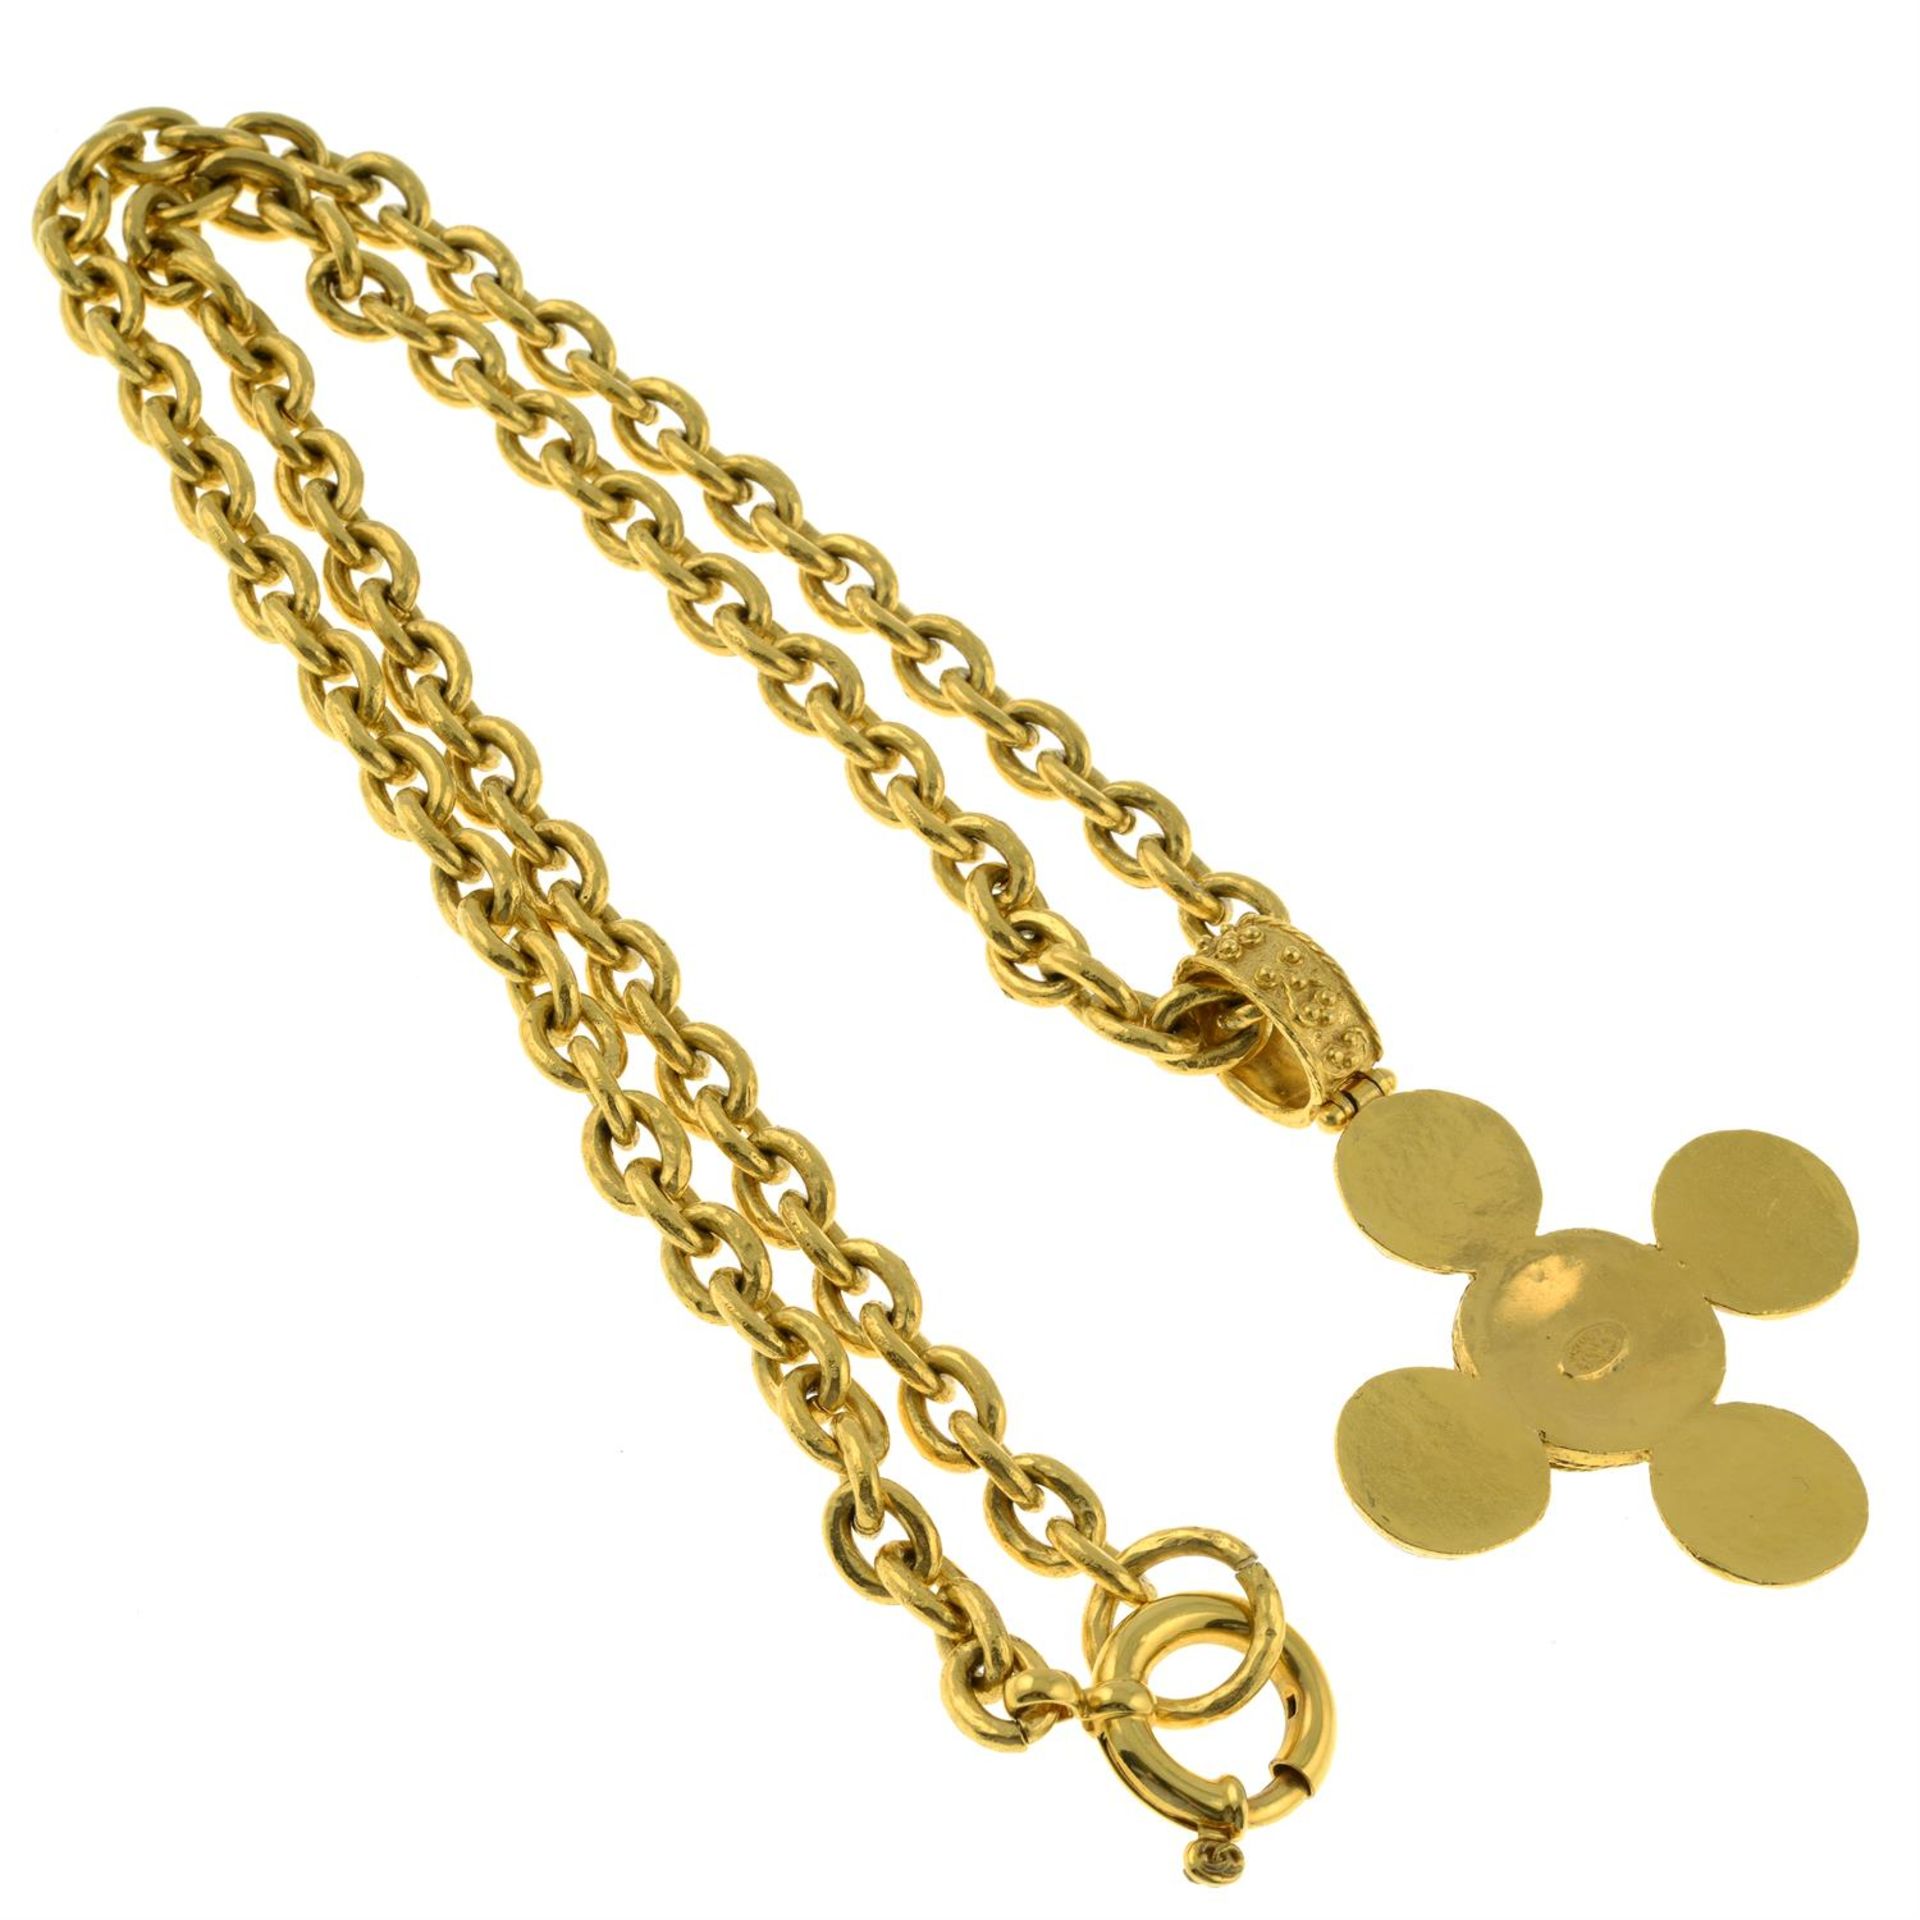 CHANEL - a 'Matelassé' necklace. - Image 2 of 2